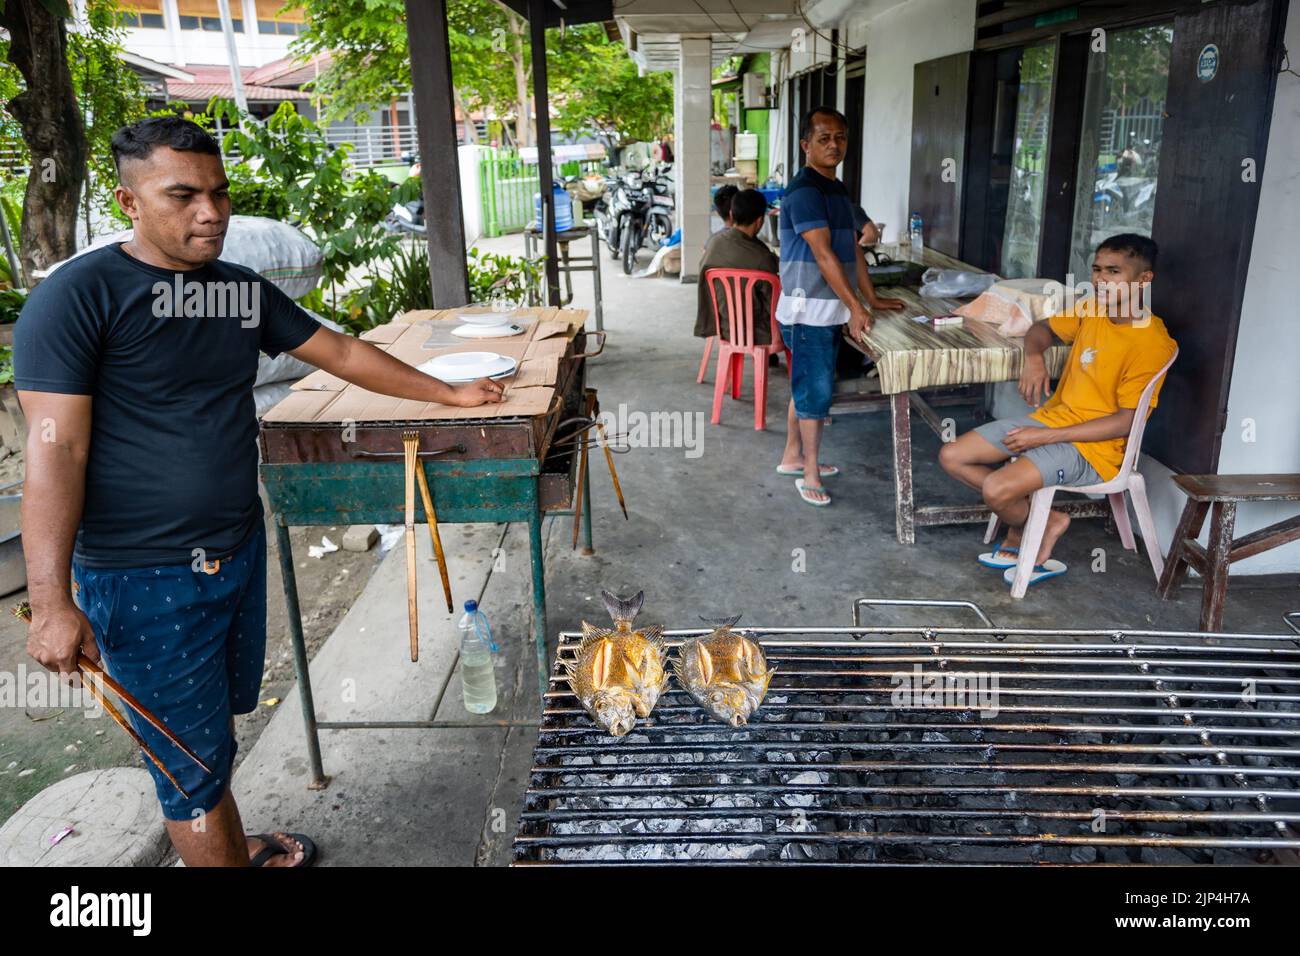 Un uomo locale griglia pesce su una griglia a carbone in un ristorante. Sulawesi, Indonesia. Foto Stock